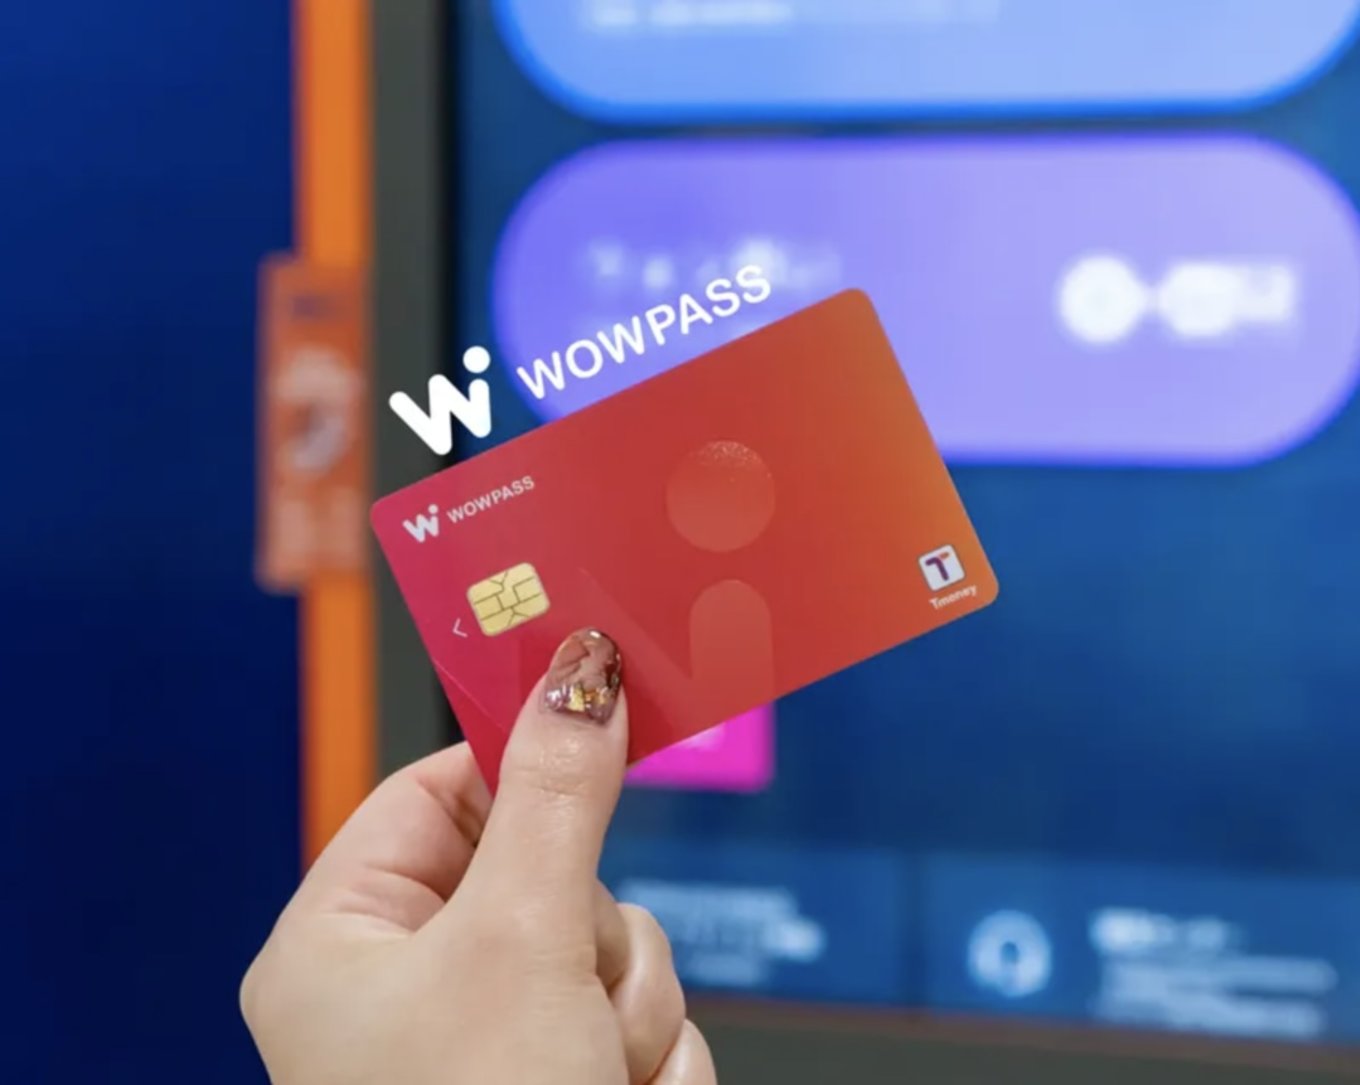 WOWPASS card